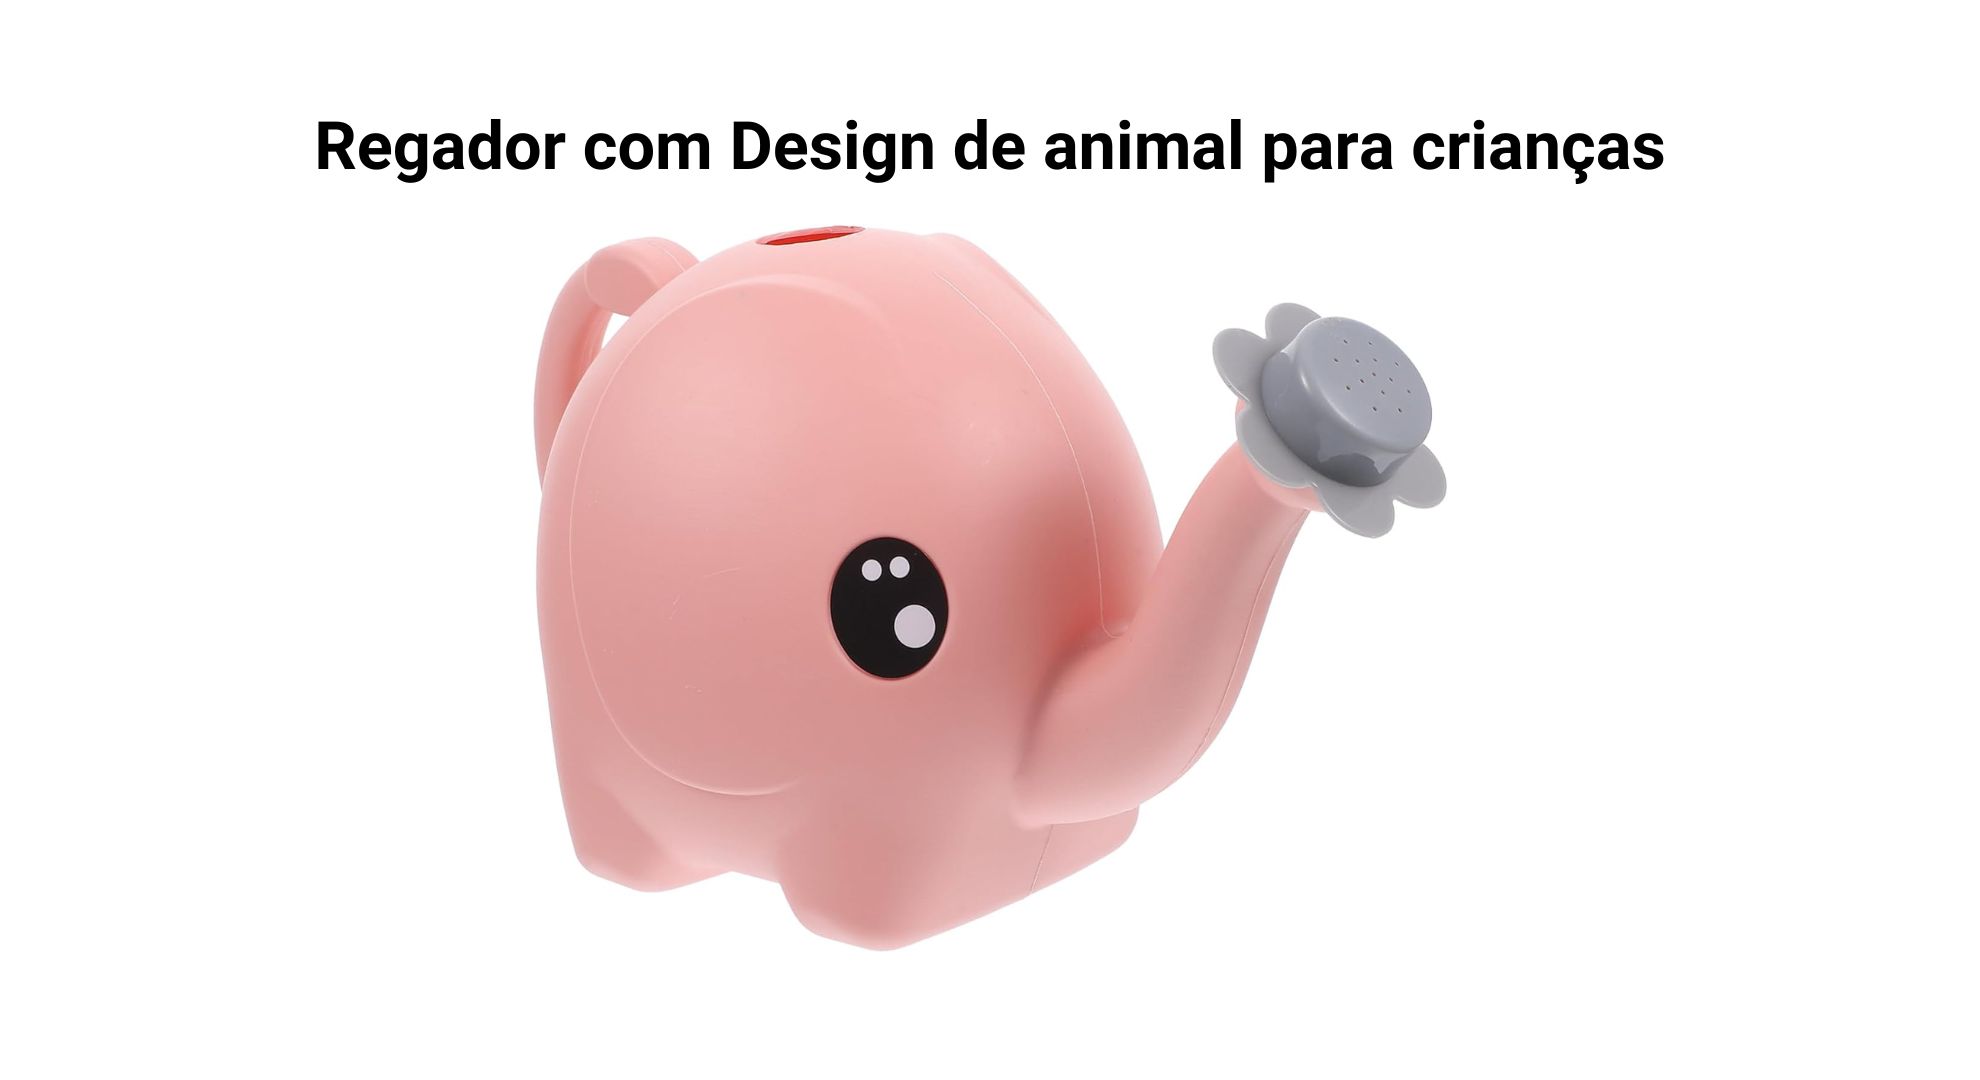 5- Regador com Design de animal para crianças